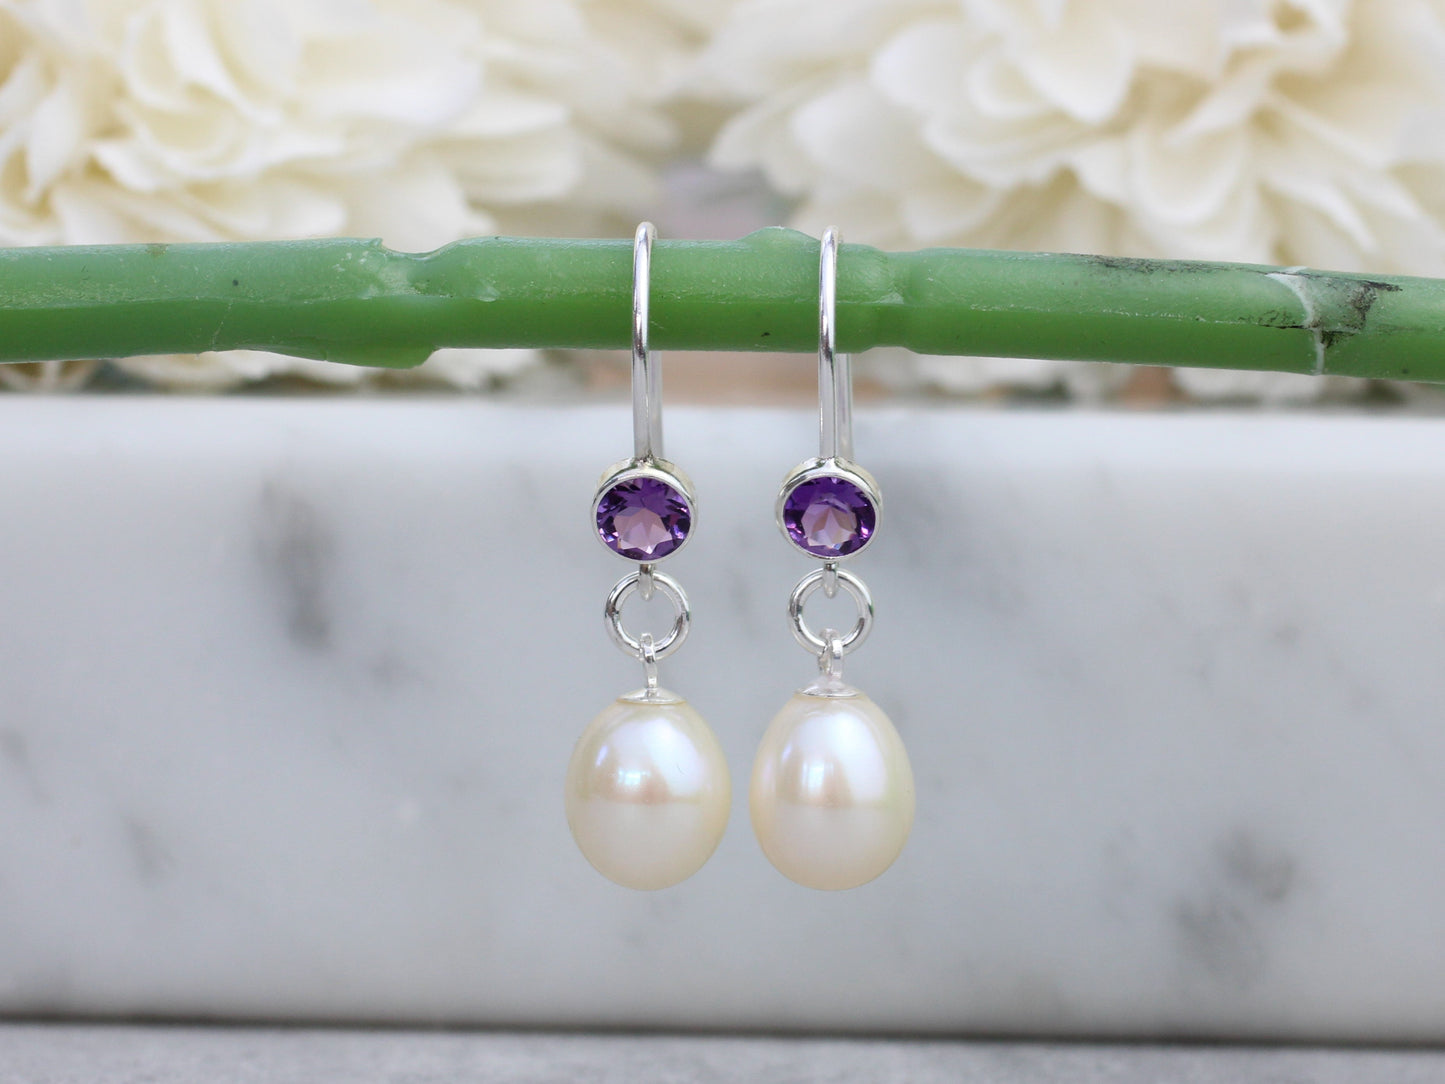 Amethyst and pearl drop earrings.